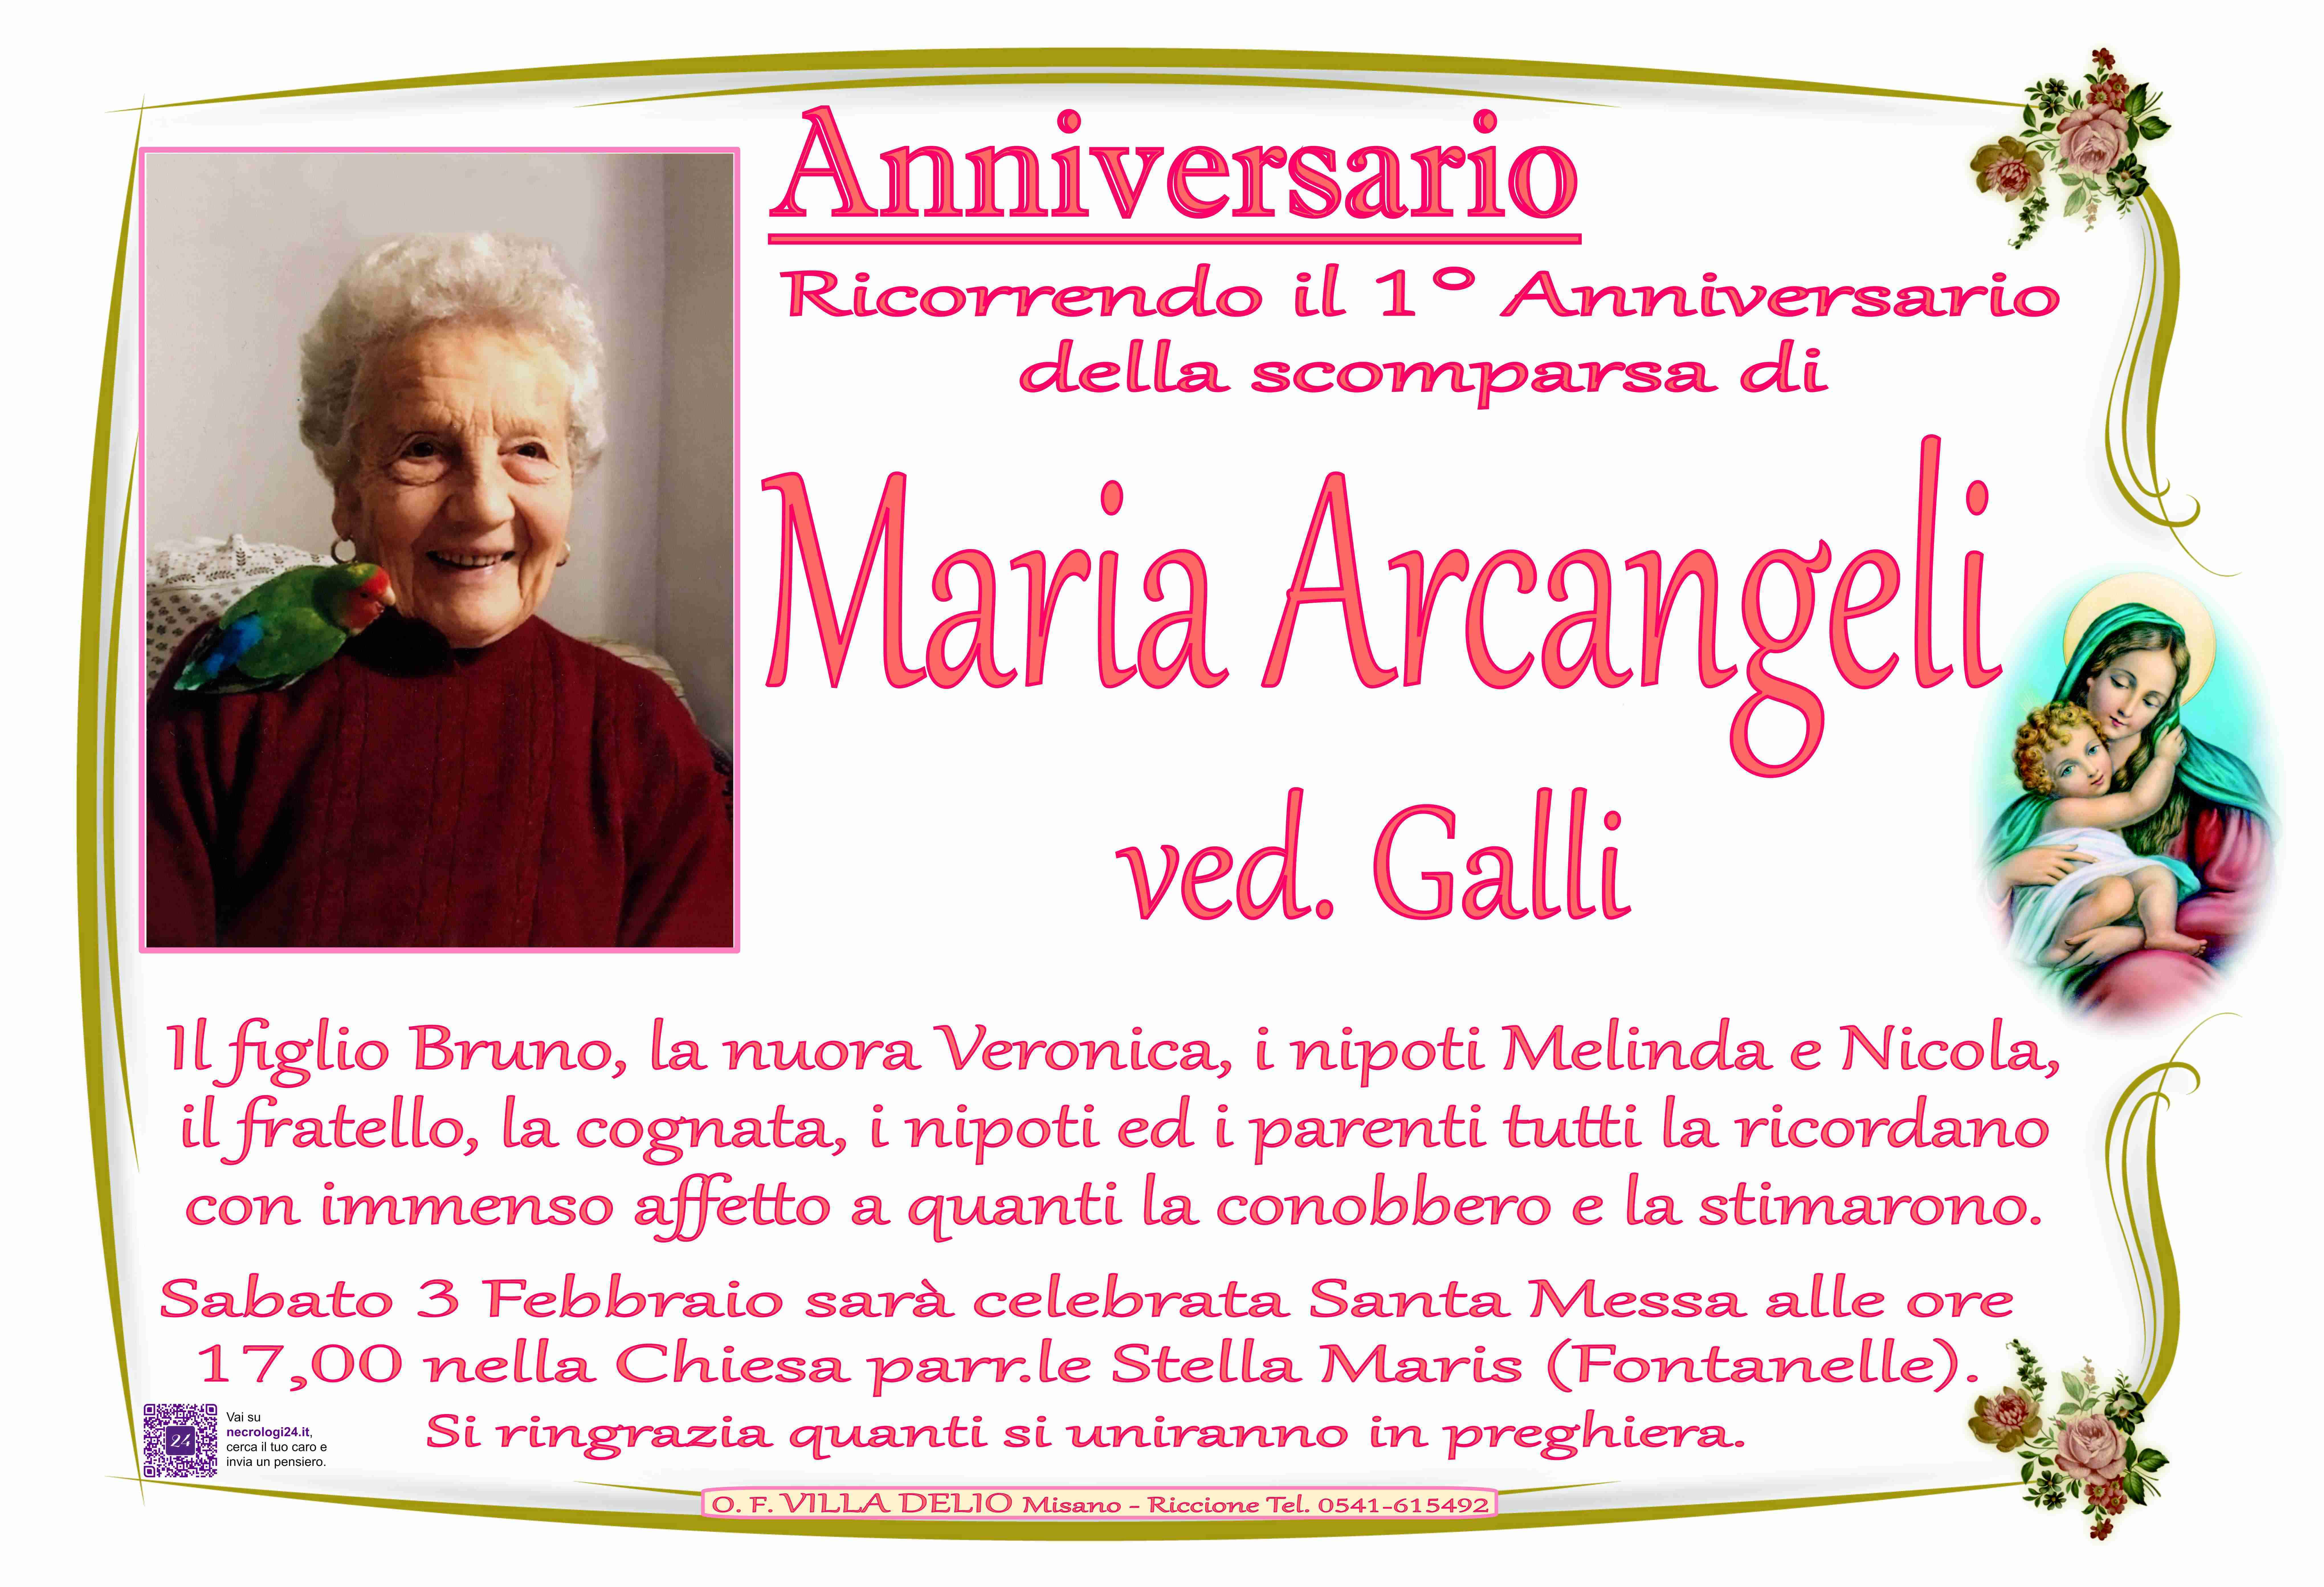 Maria Arcangeli ved. Galli